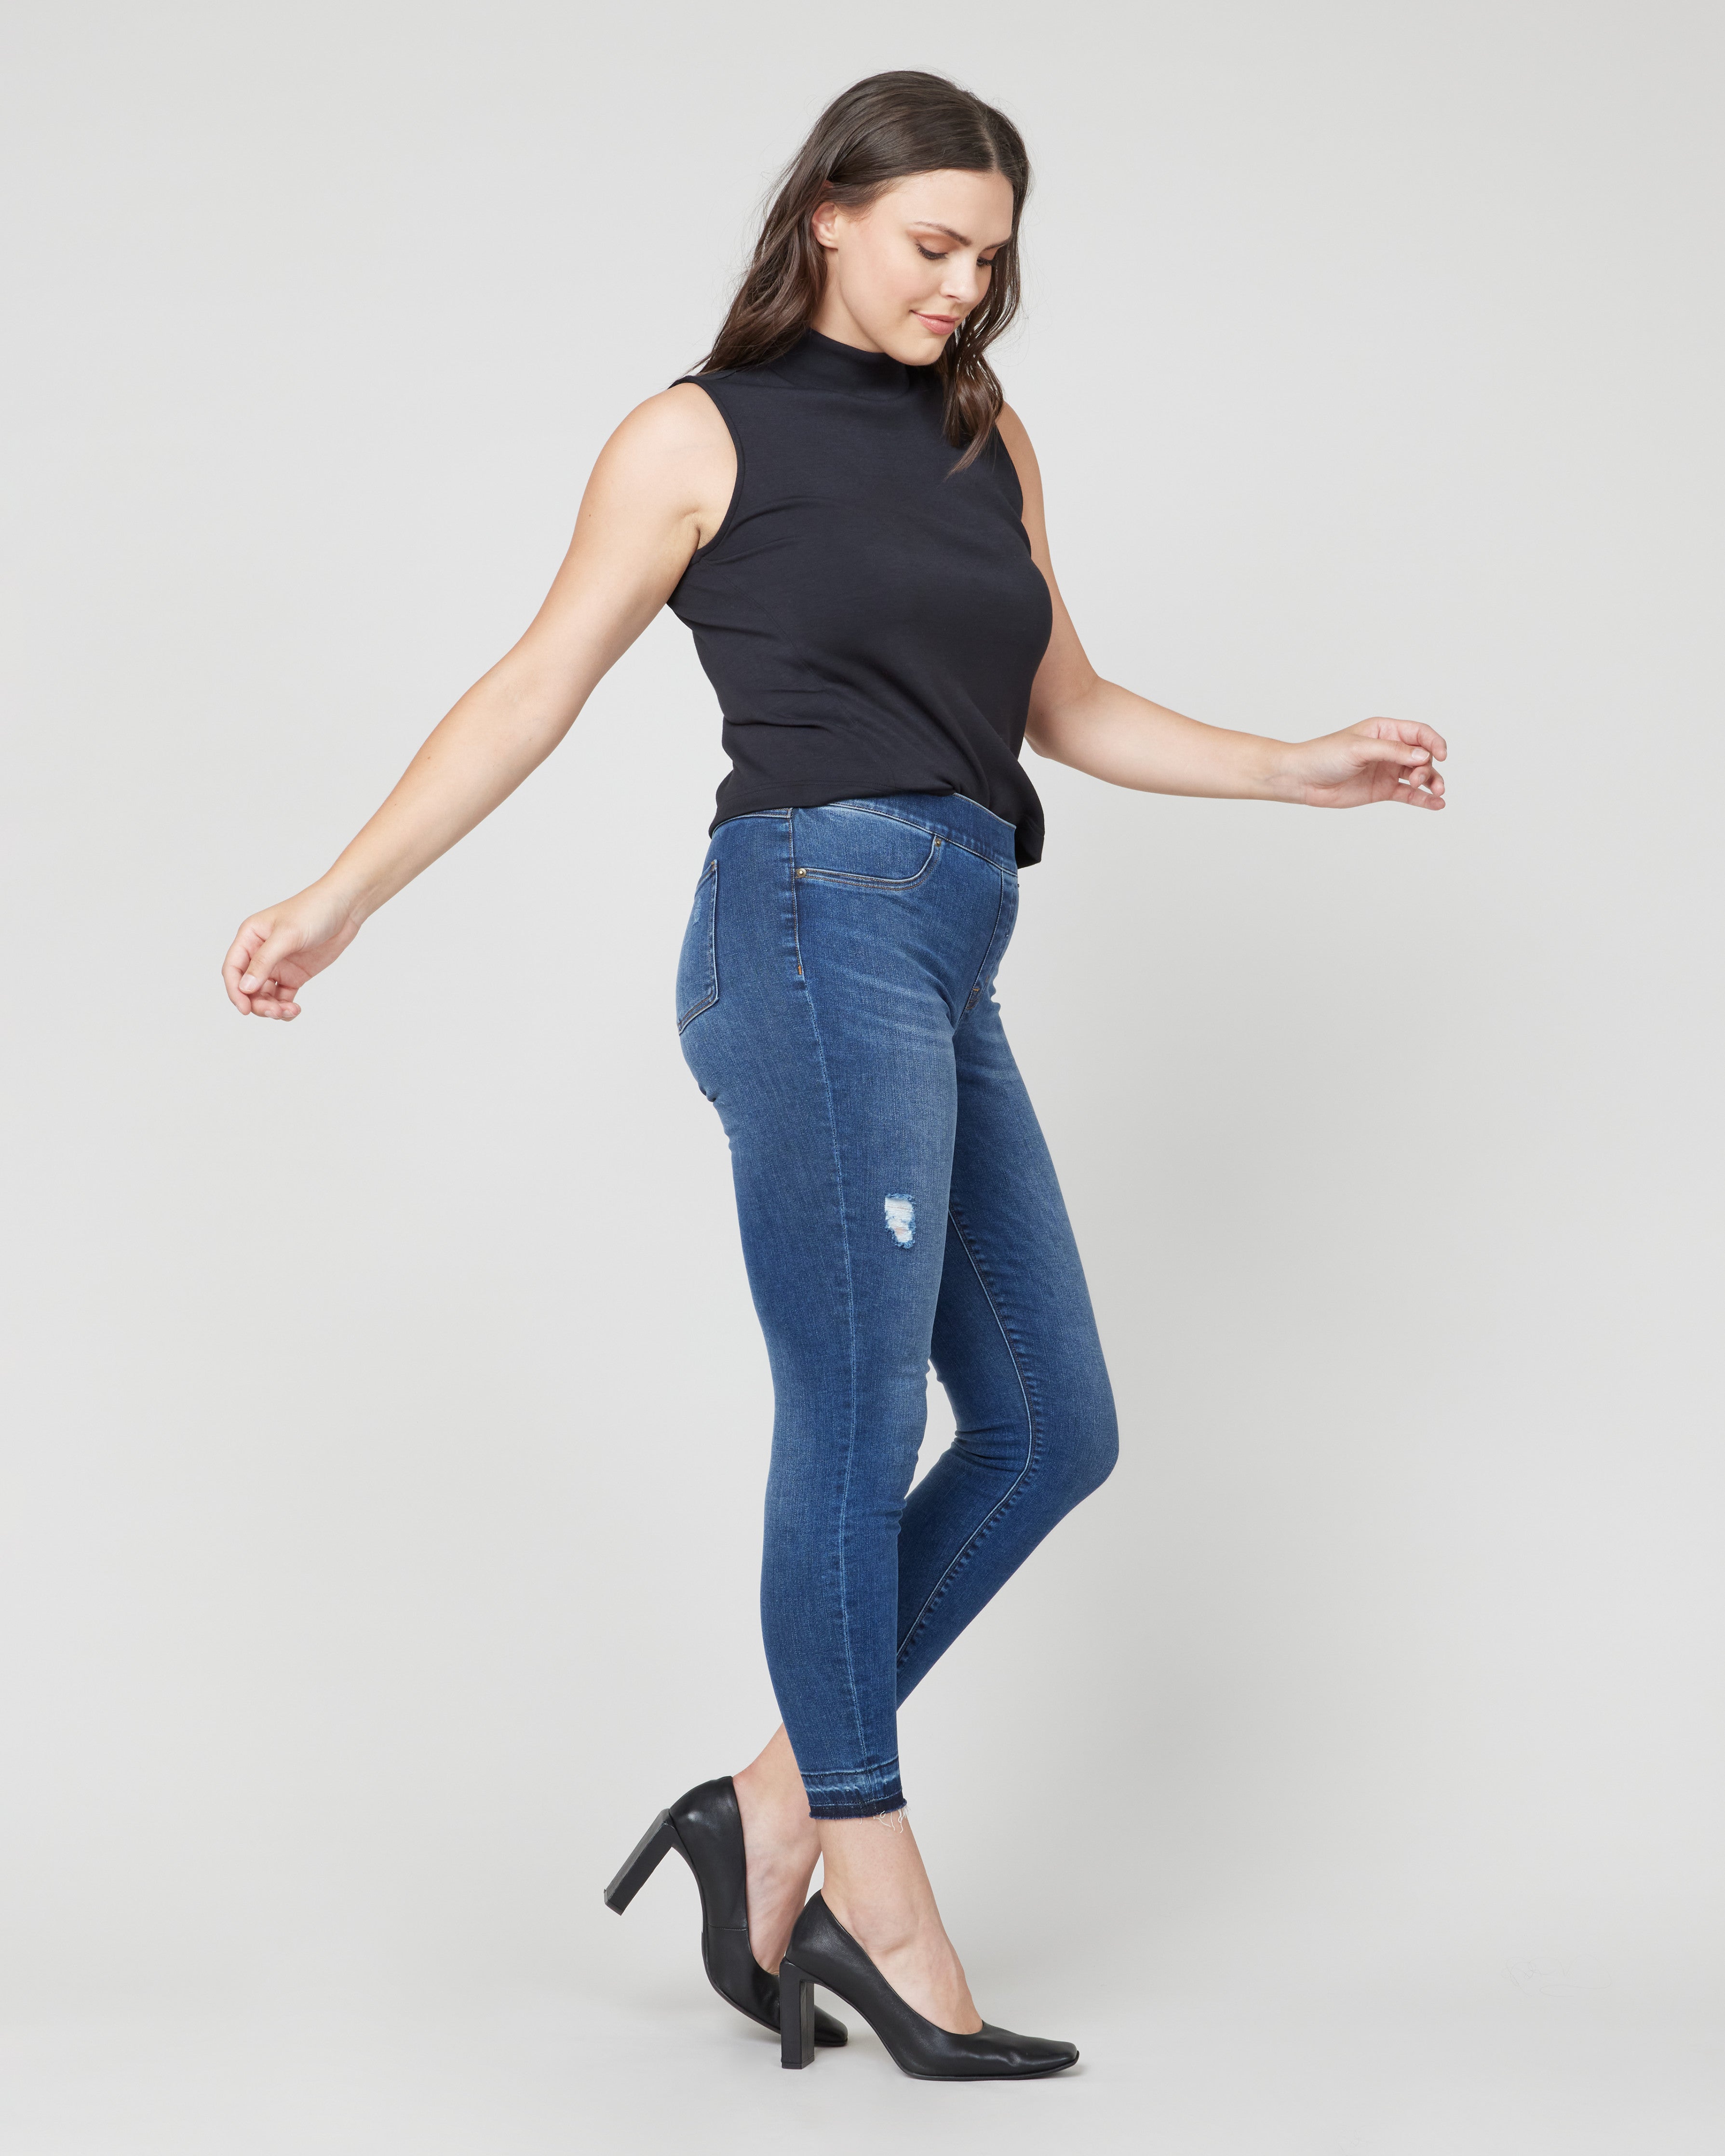 Women's Skinny Jeans: Shop Skinny Jeans for Women